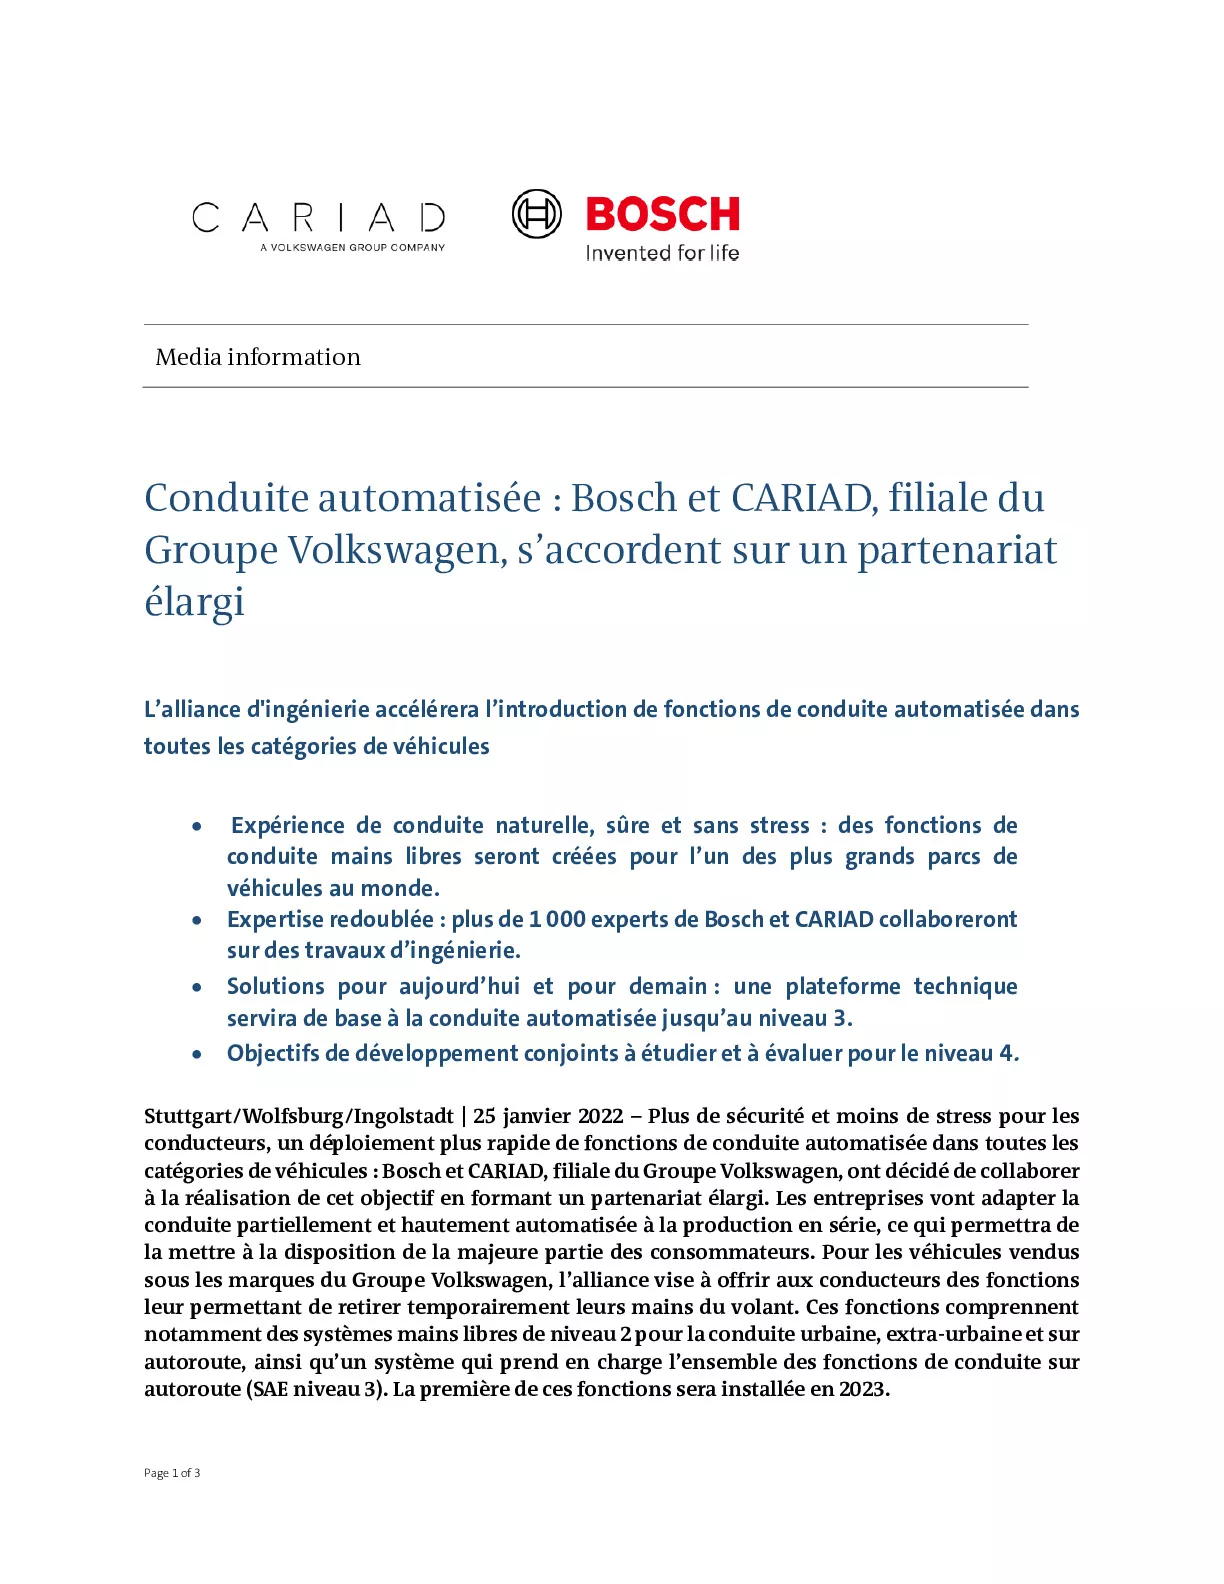 22_01_25_Conduite automatisée Bosch et CARIAD filiale du Groupe Volkswagen saccordent sur un partenariat élargi 002-pdf